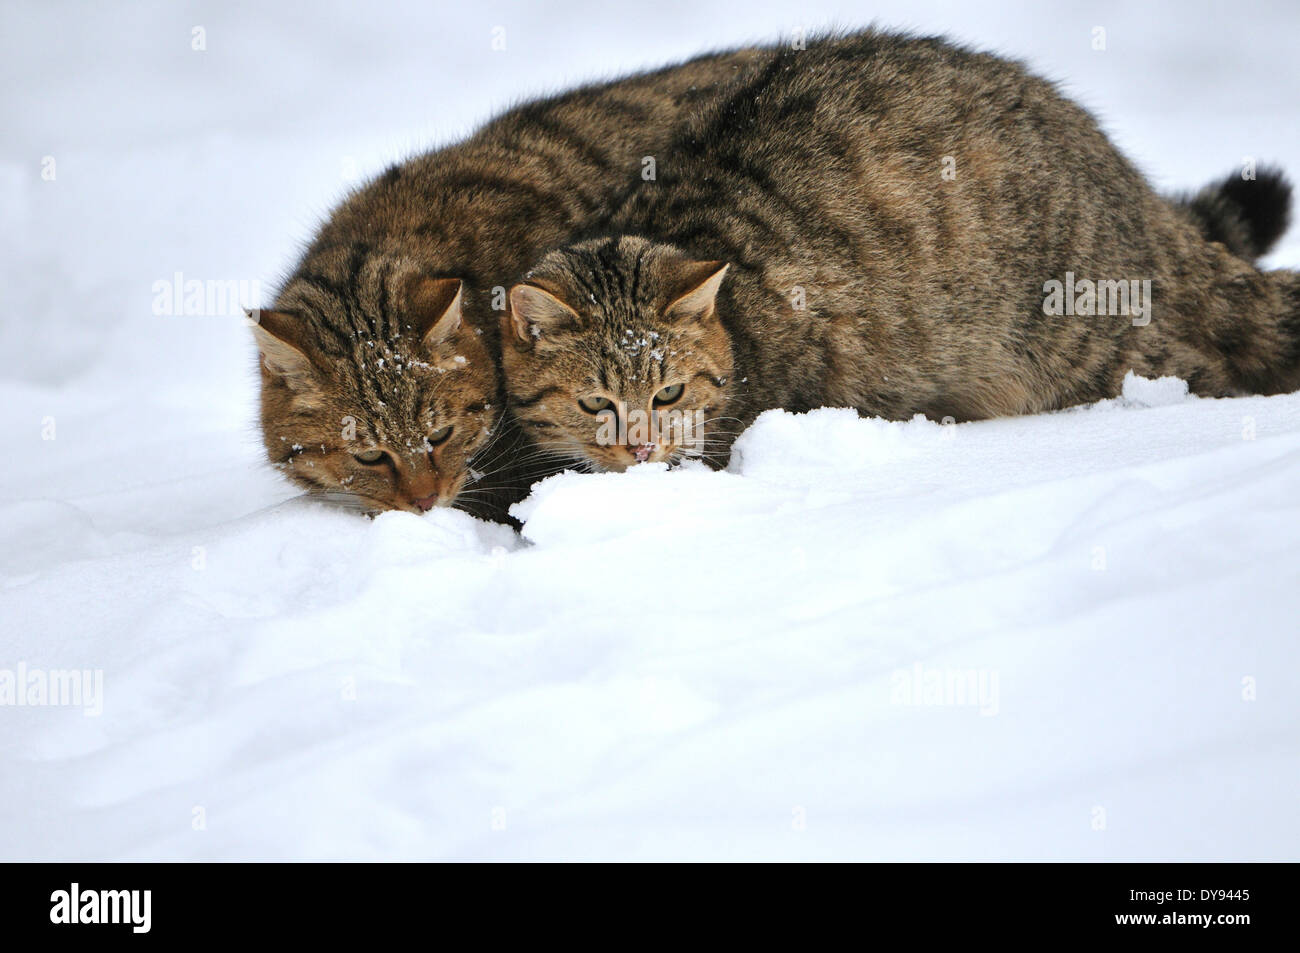 Wildcat predator gioco predator predatori piccoli gatti gatti gatto gatti selvatici Felis silvestris wildcats predator neve inverno animale, Foto Stock